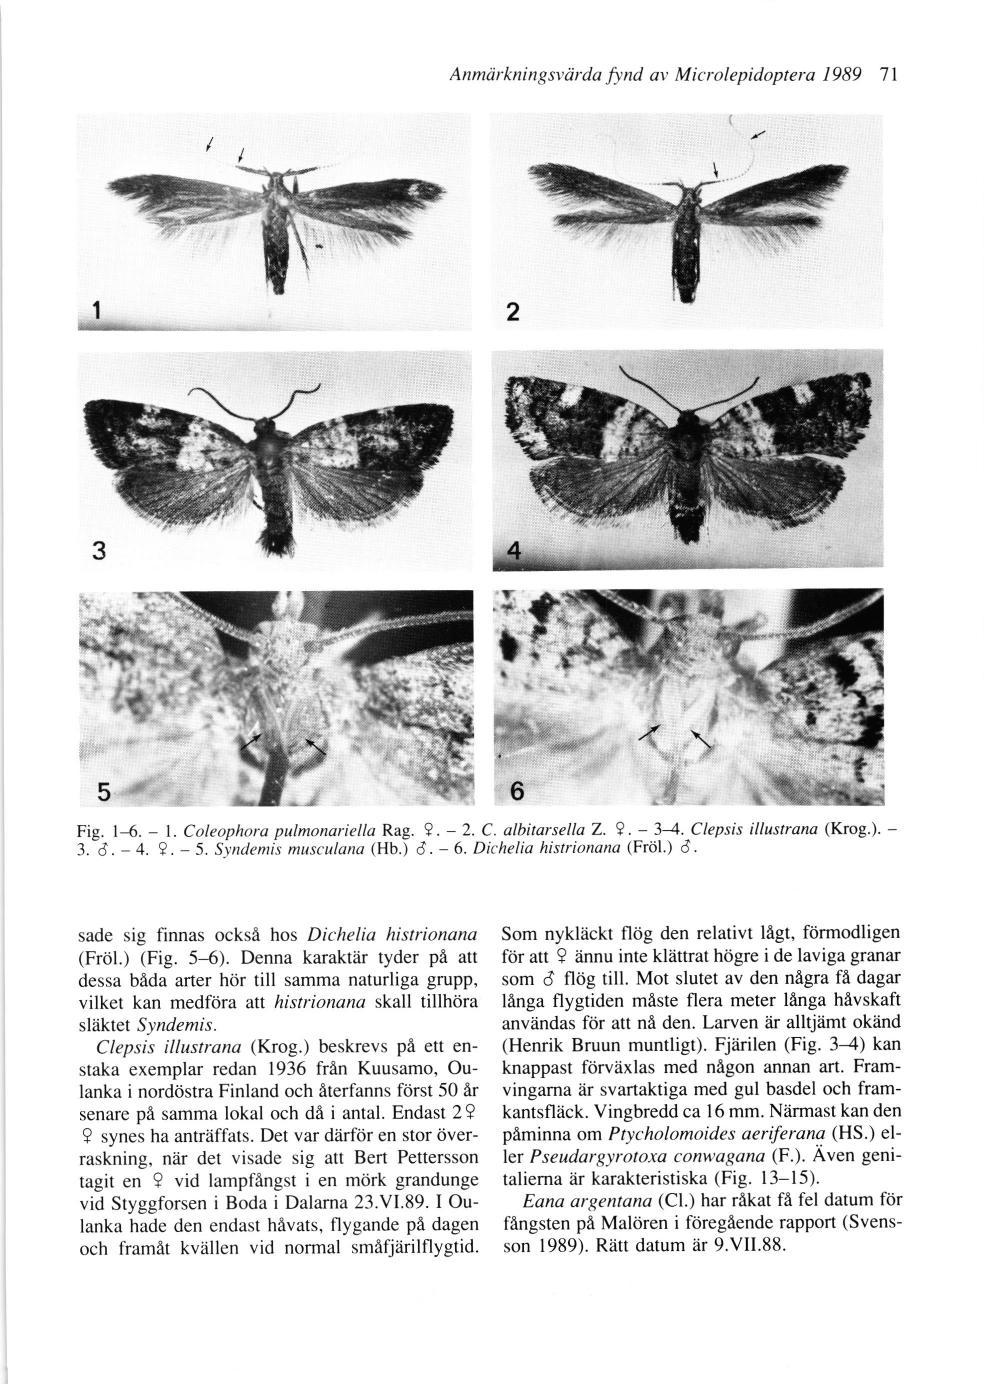 Anmärkningsvärda fynd av Microlepidoptera 1989 71 Anmdrkningsvdrda fynd av Microlepidoptera 1989 7l 2 5 Fig. 1-6. - 1. Coleophora pulmonariella Rag. 4. - 2. C. albitarsella Z. 4. - 3-4.